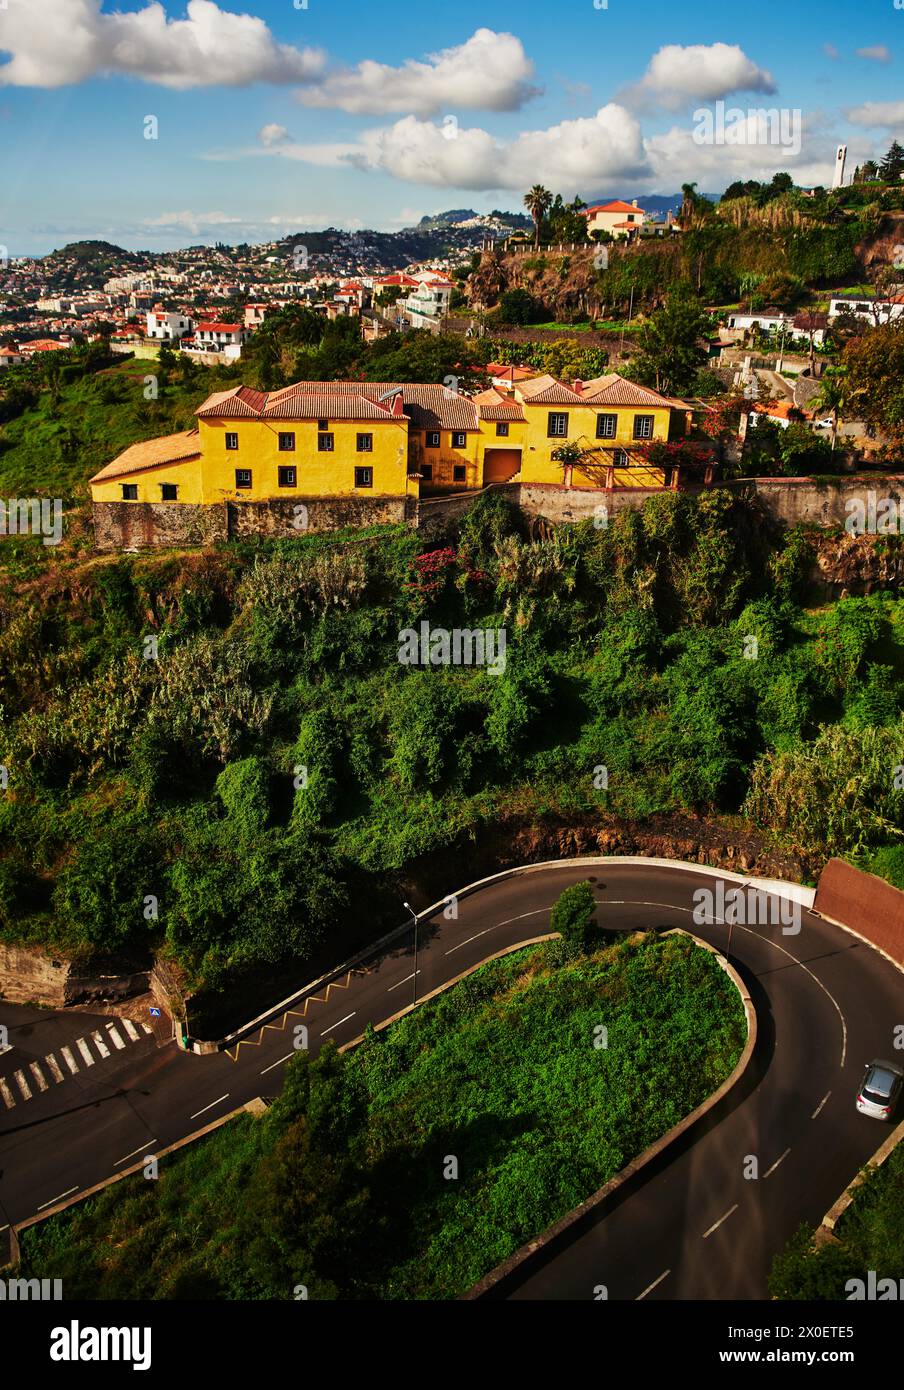 Autoroute passant par Funchal, Portugal, Europe Banque D'Images